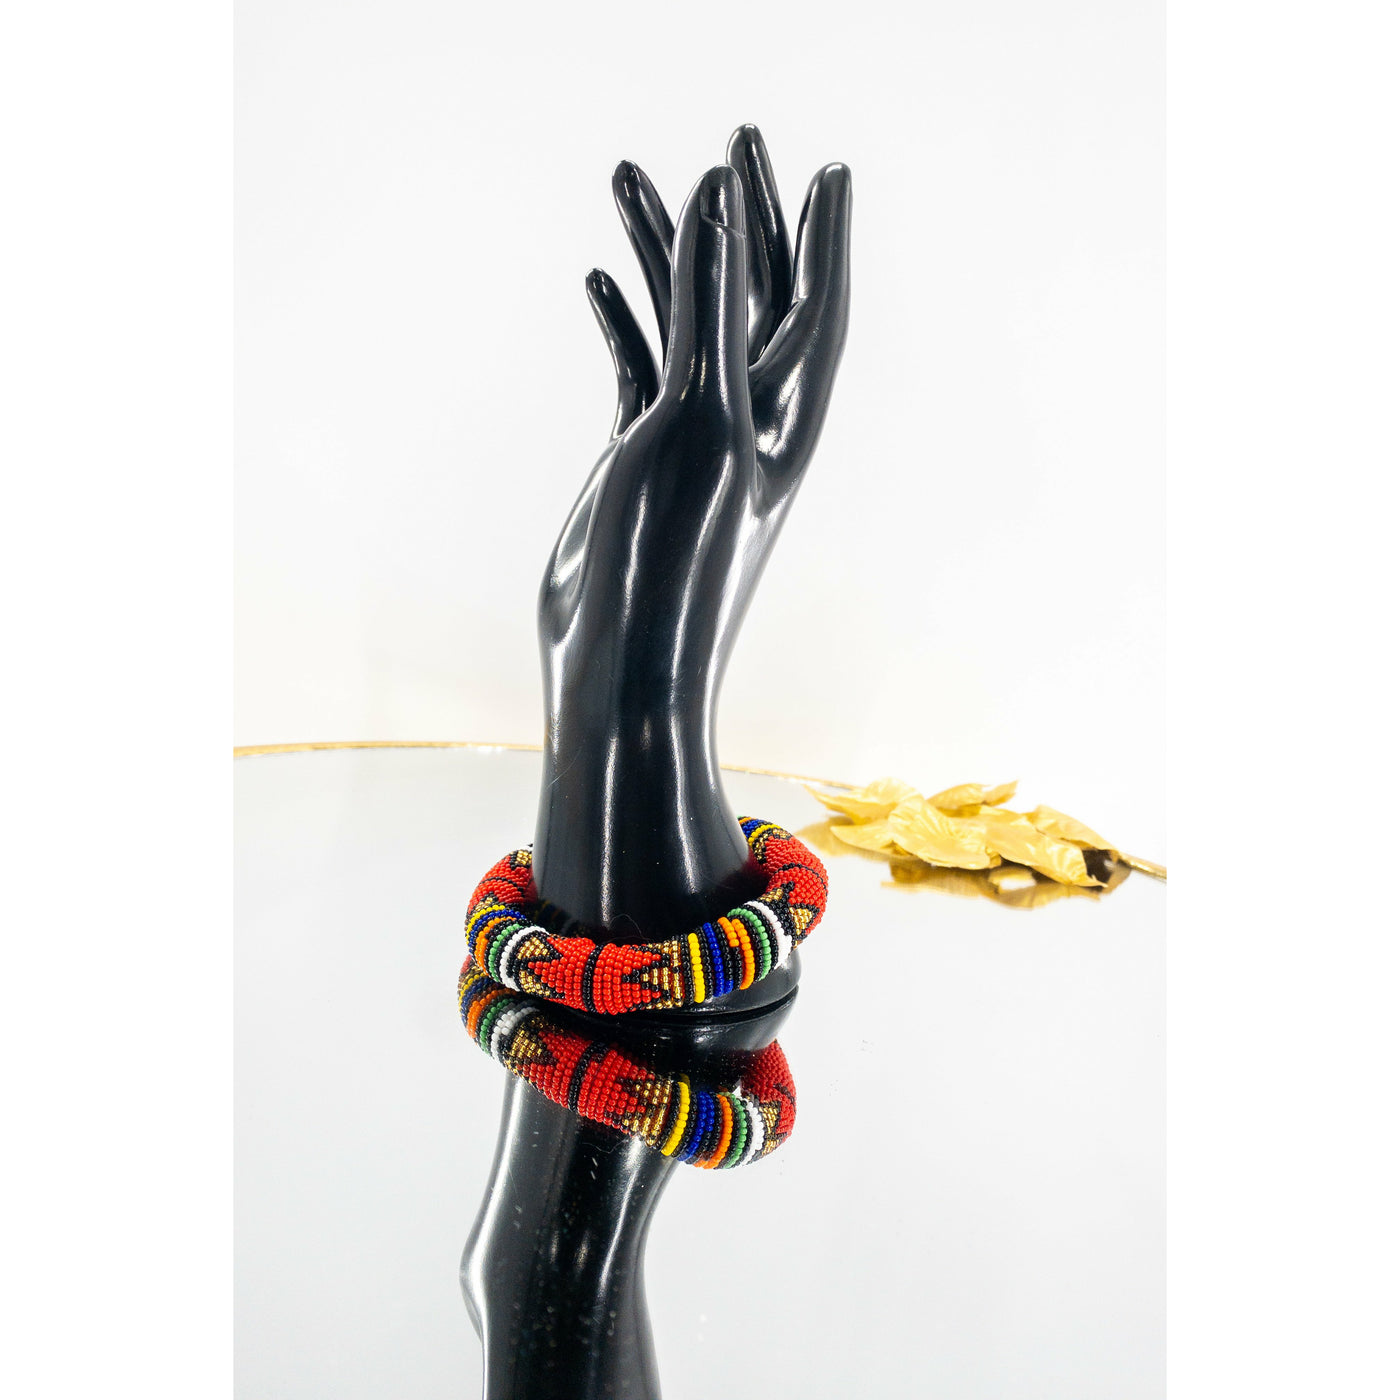 Ndebele beaded bangle/bracelet